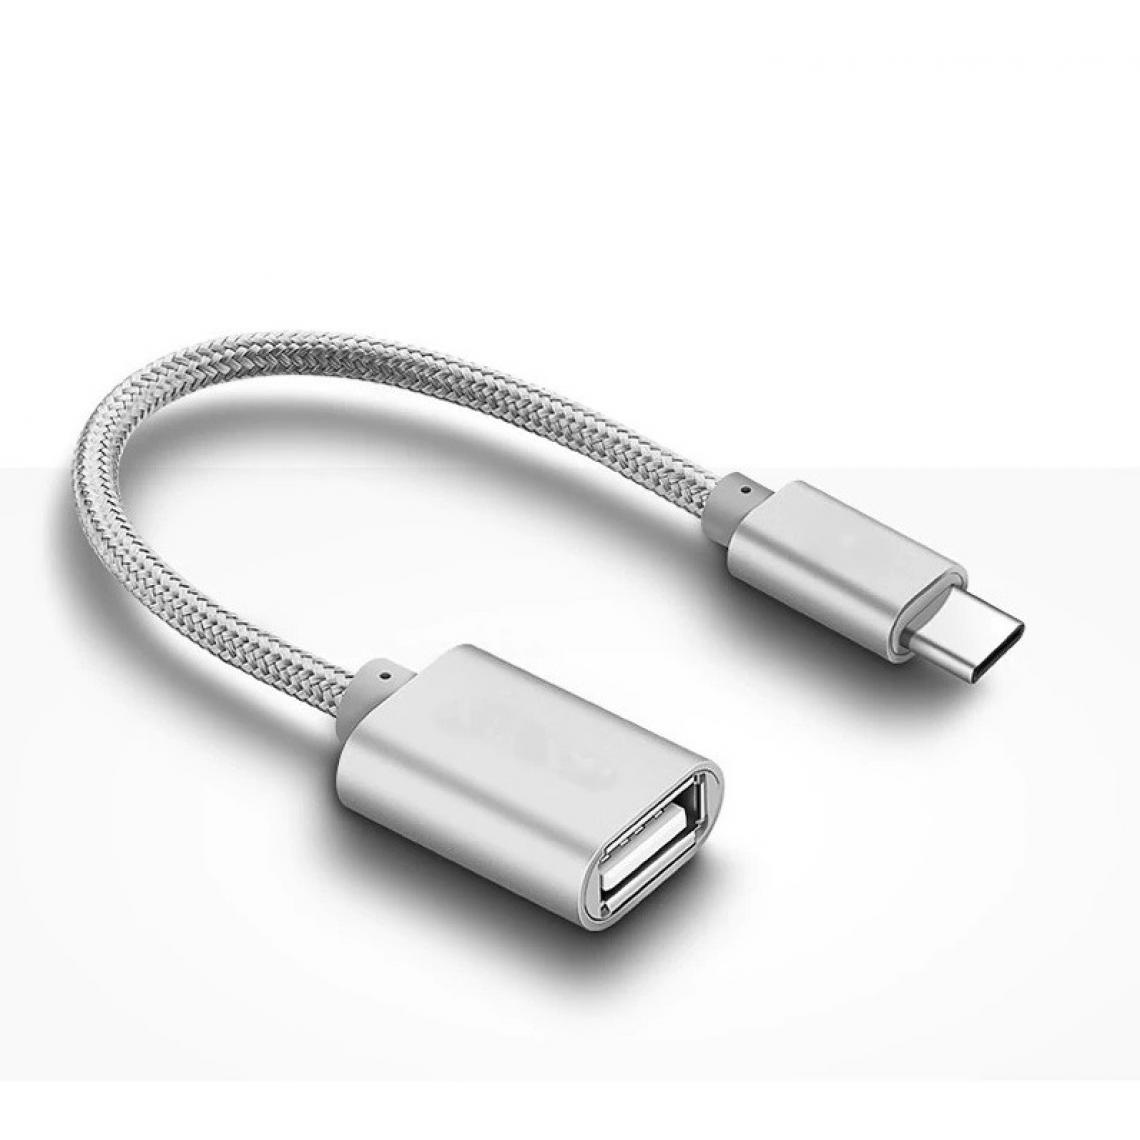 Shot - Adaptateur Type C/USB pour HONOR 8 PRO Smartphone & MAC USB-C Clef (ARGENT) - Autres accessoires smartphone